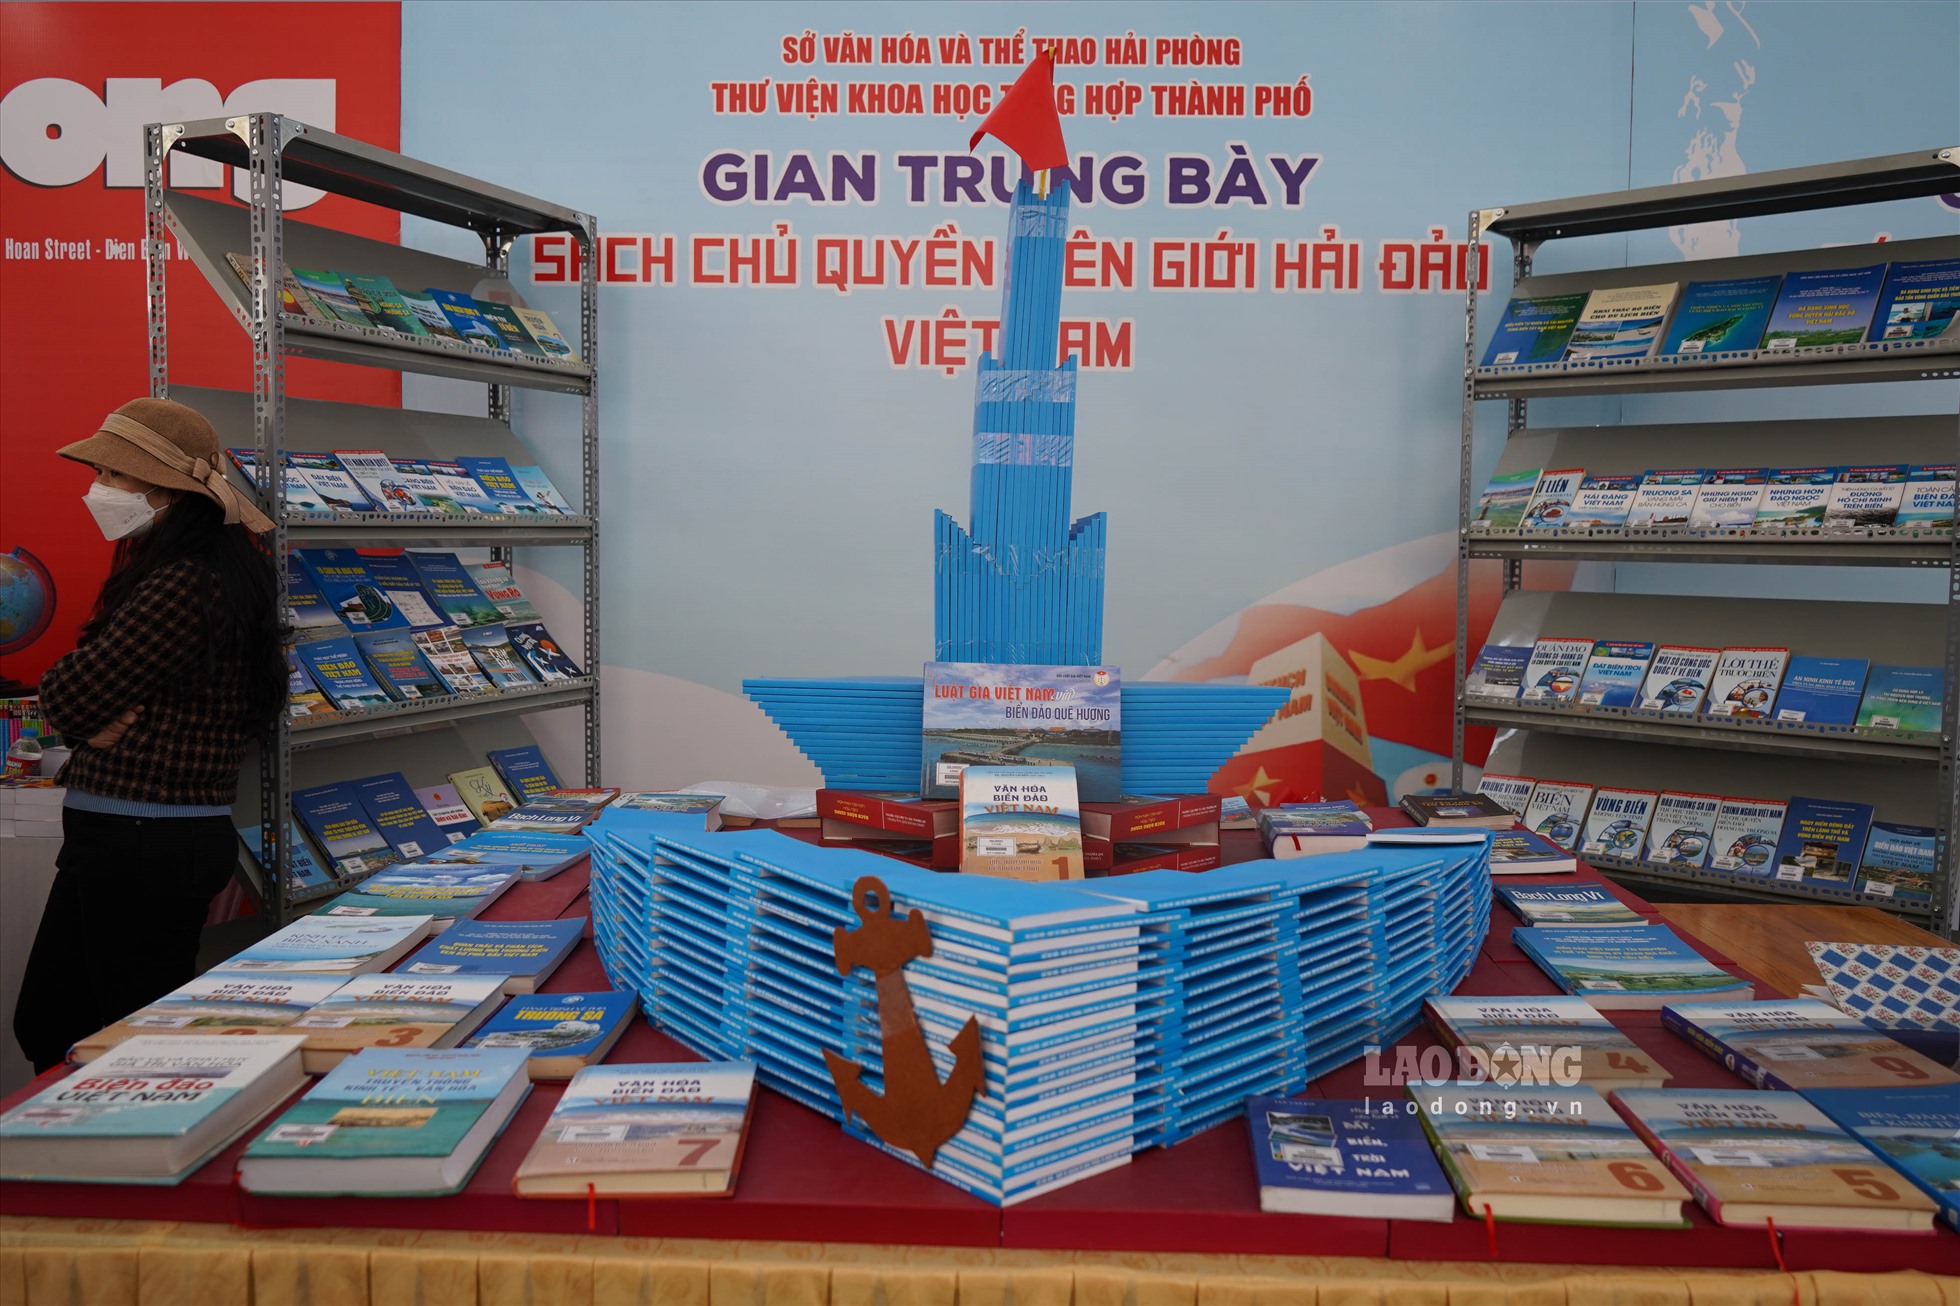 Các gian trưng bày sách về Chủ tịch Hồ Chí Minh và chủ quyền biên giới hải đảo Việt Nam.